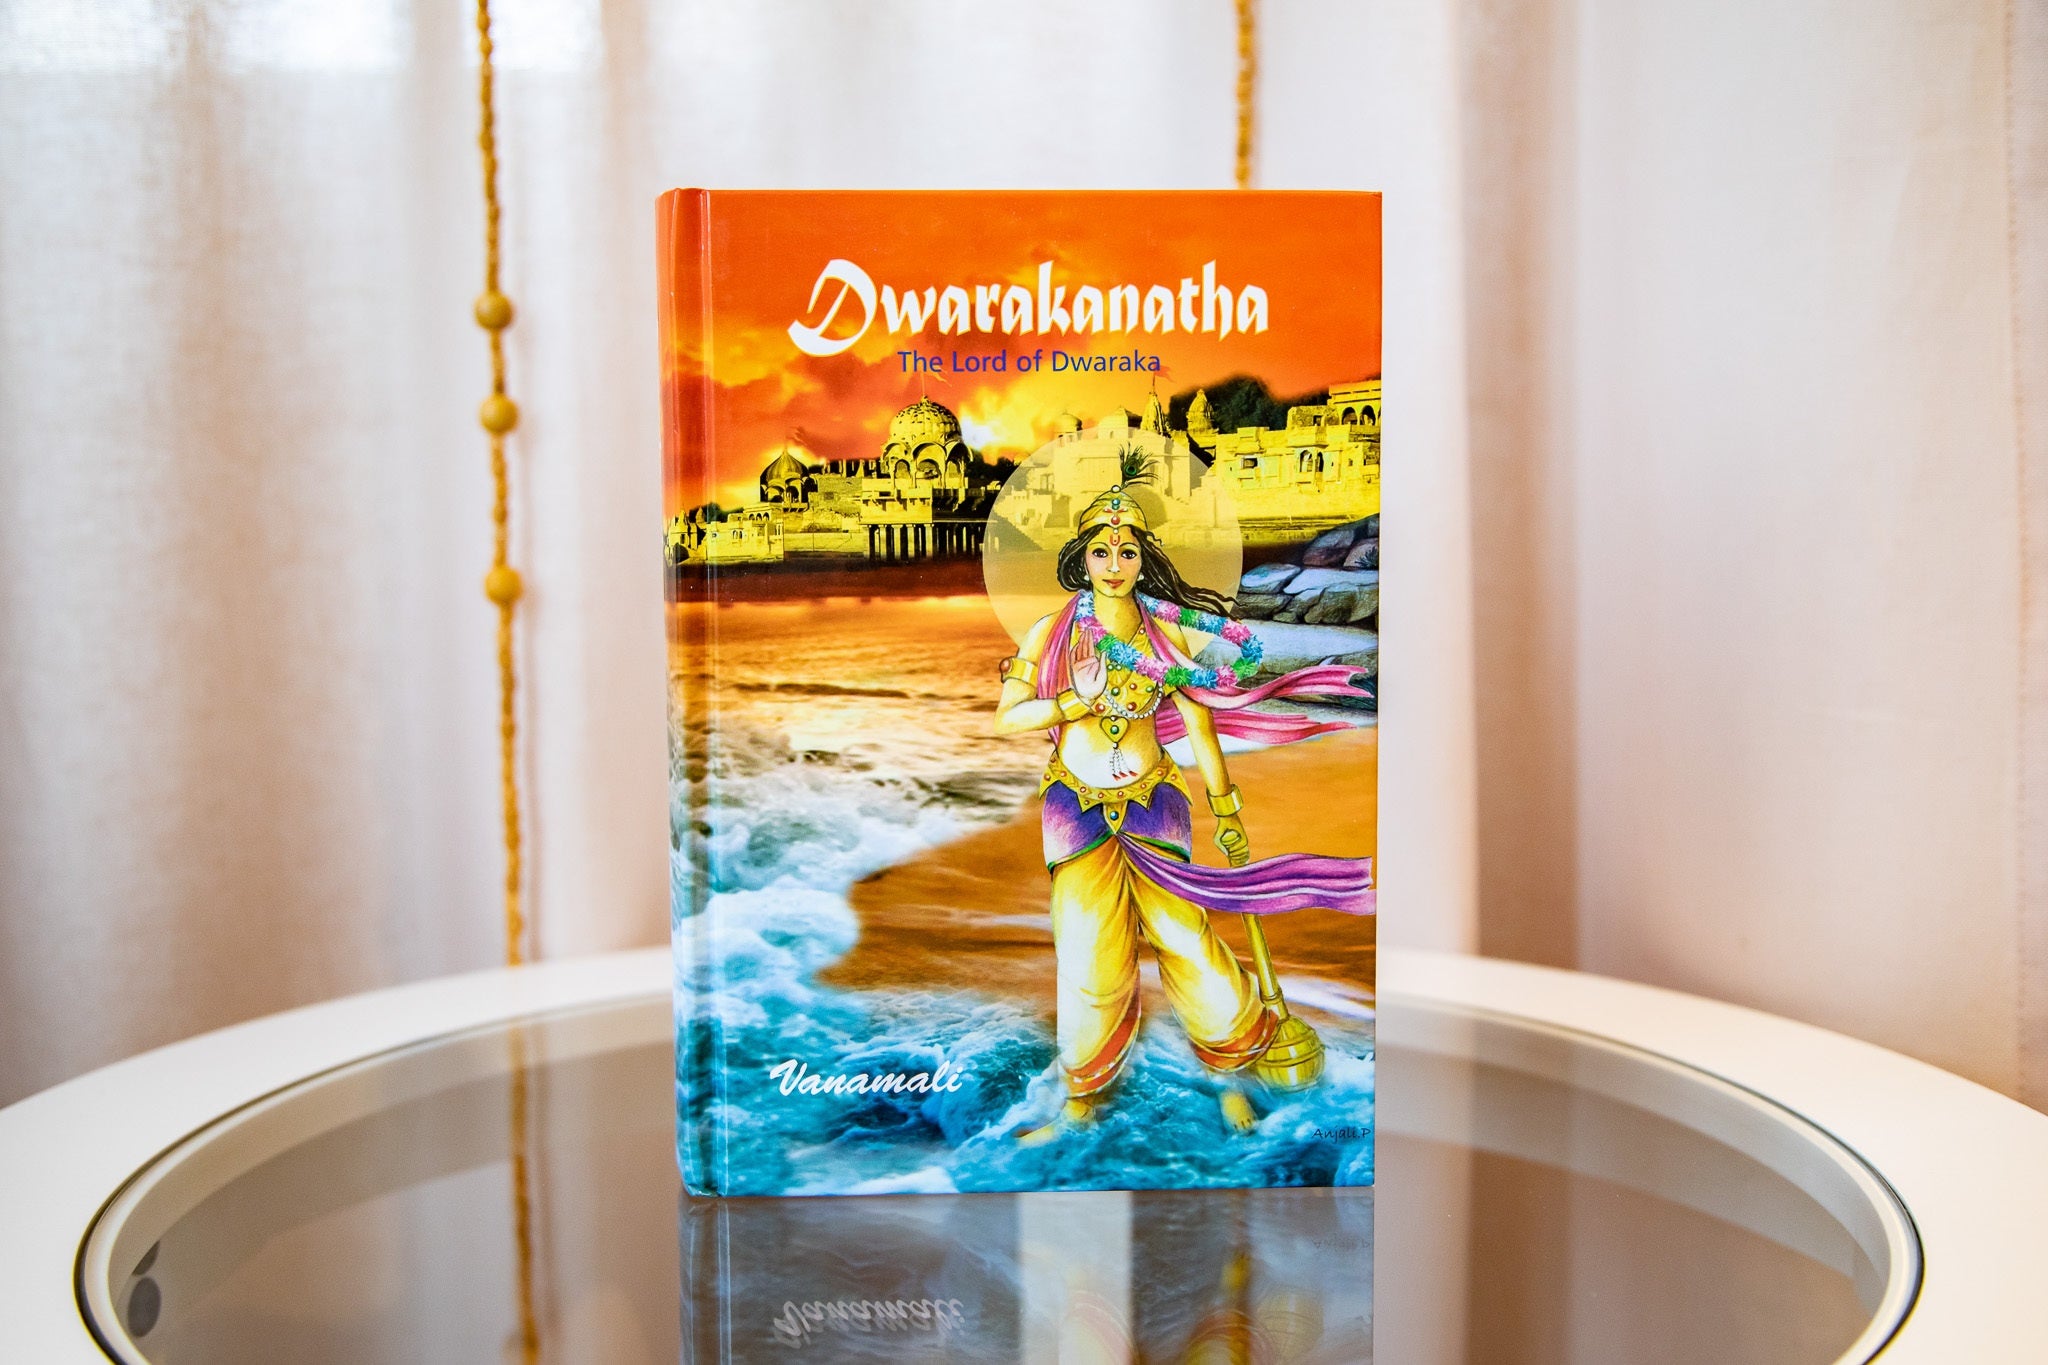 Dwarakanatha: the Lord of Dwaraka. Vanamali.